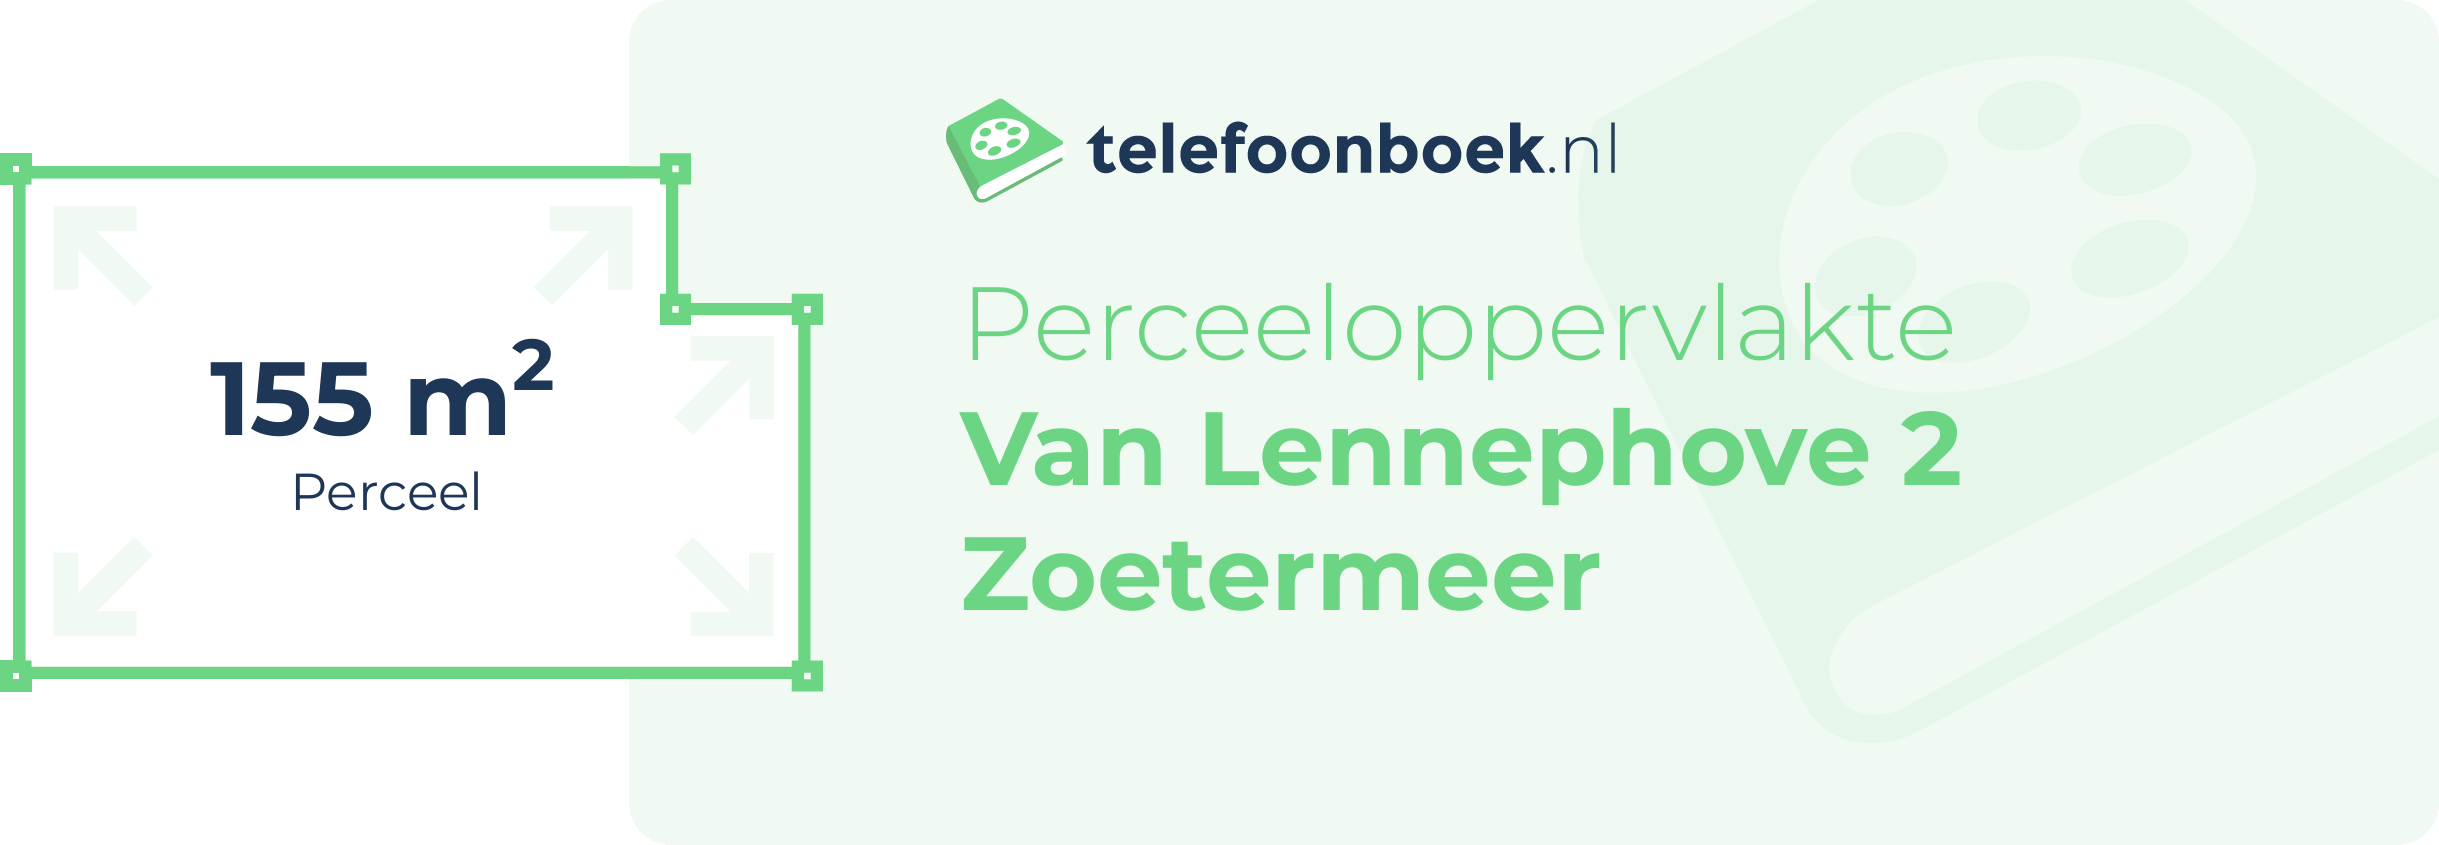 Perceeloppervlakte Van Lennephove 2 Zoetermeer